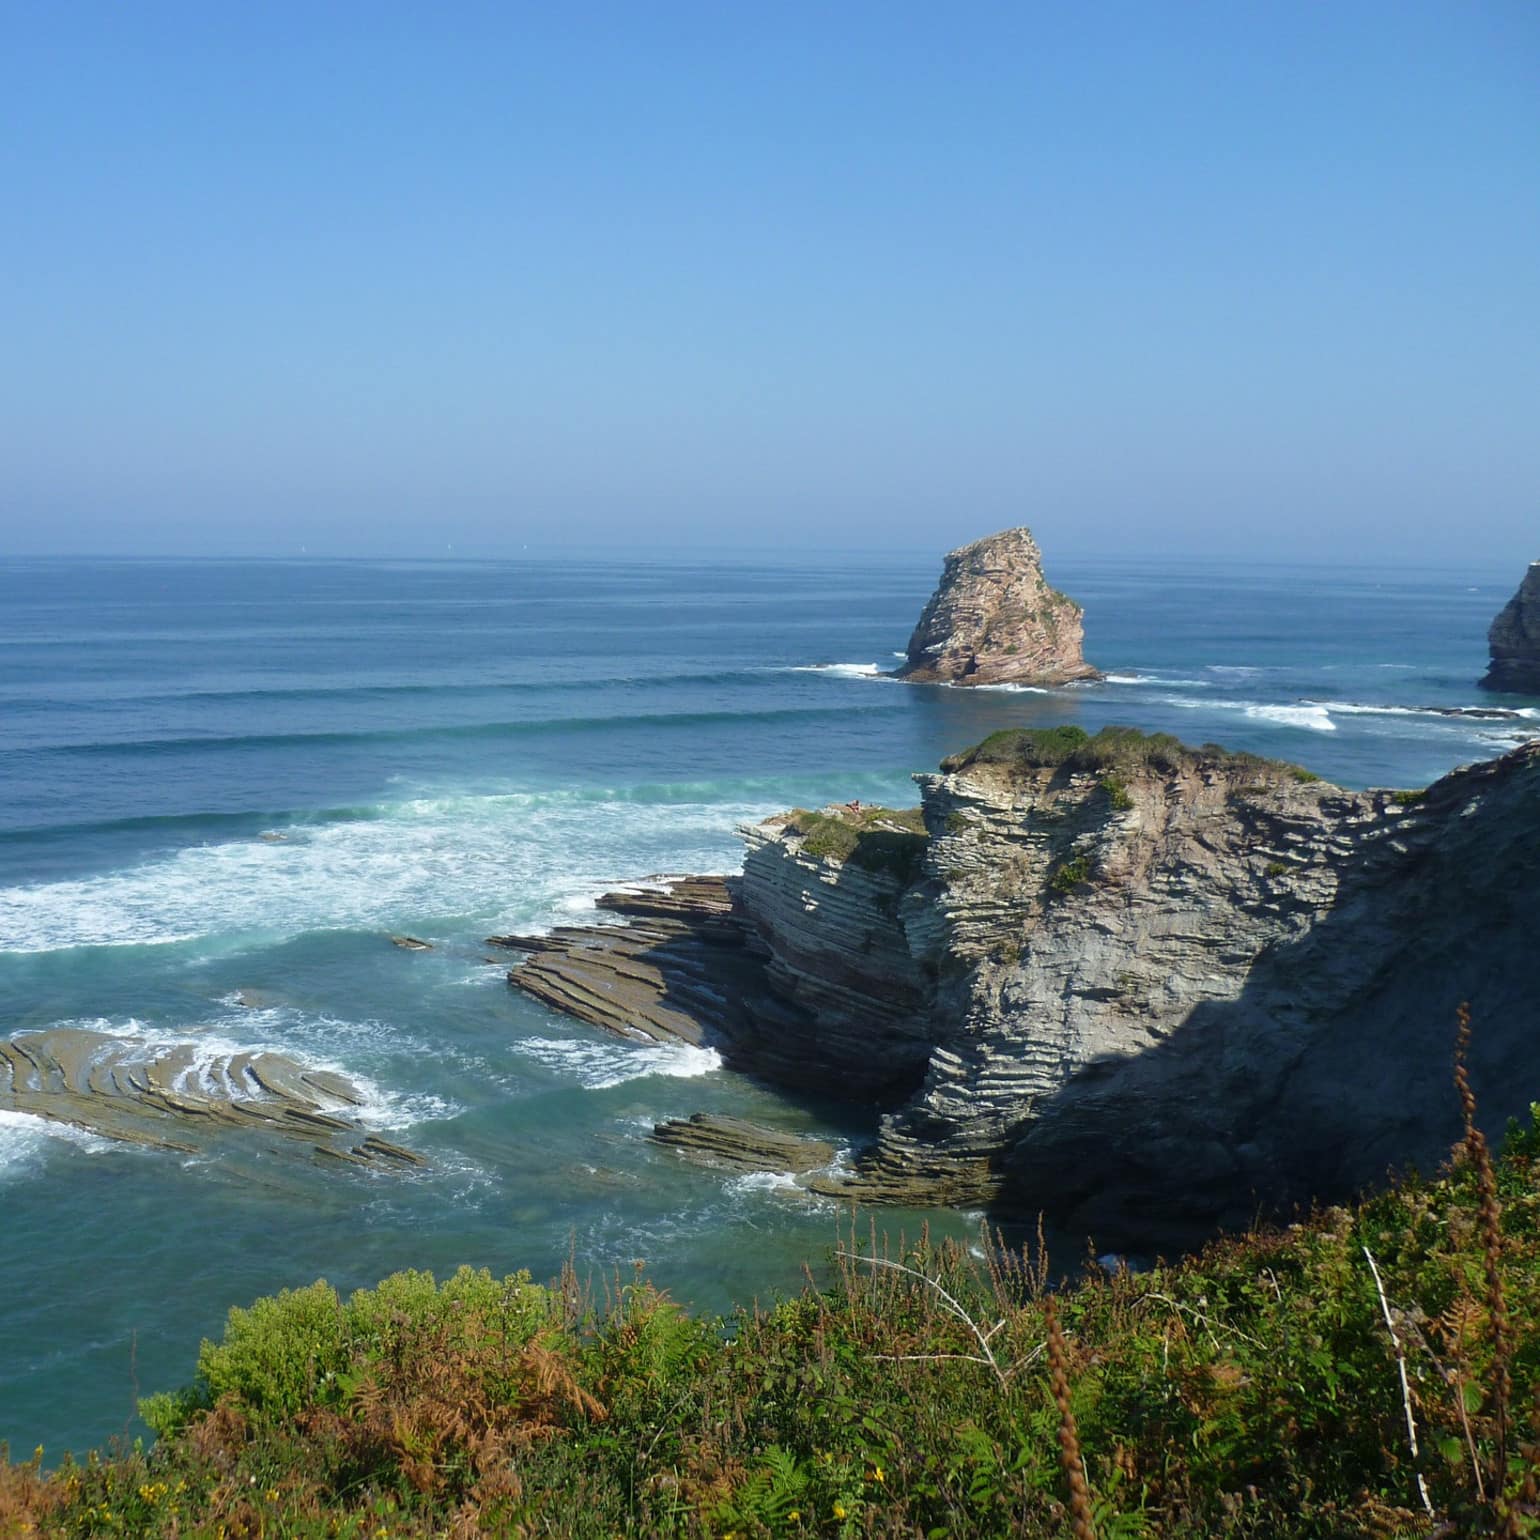 La côte basque : des rochers, de la végétation et l'immensité bleue de l'océan Atlantique